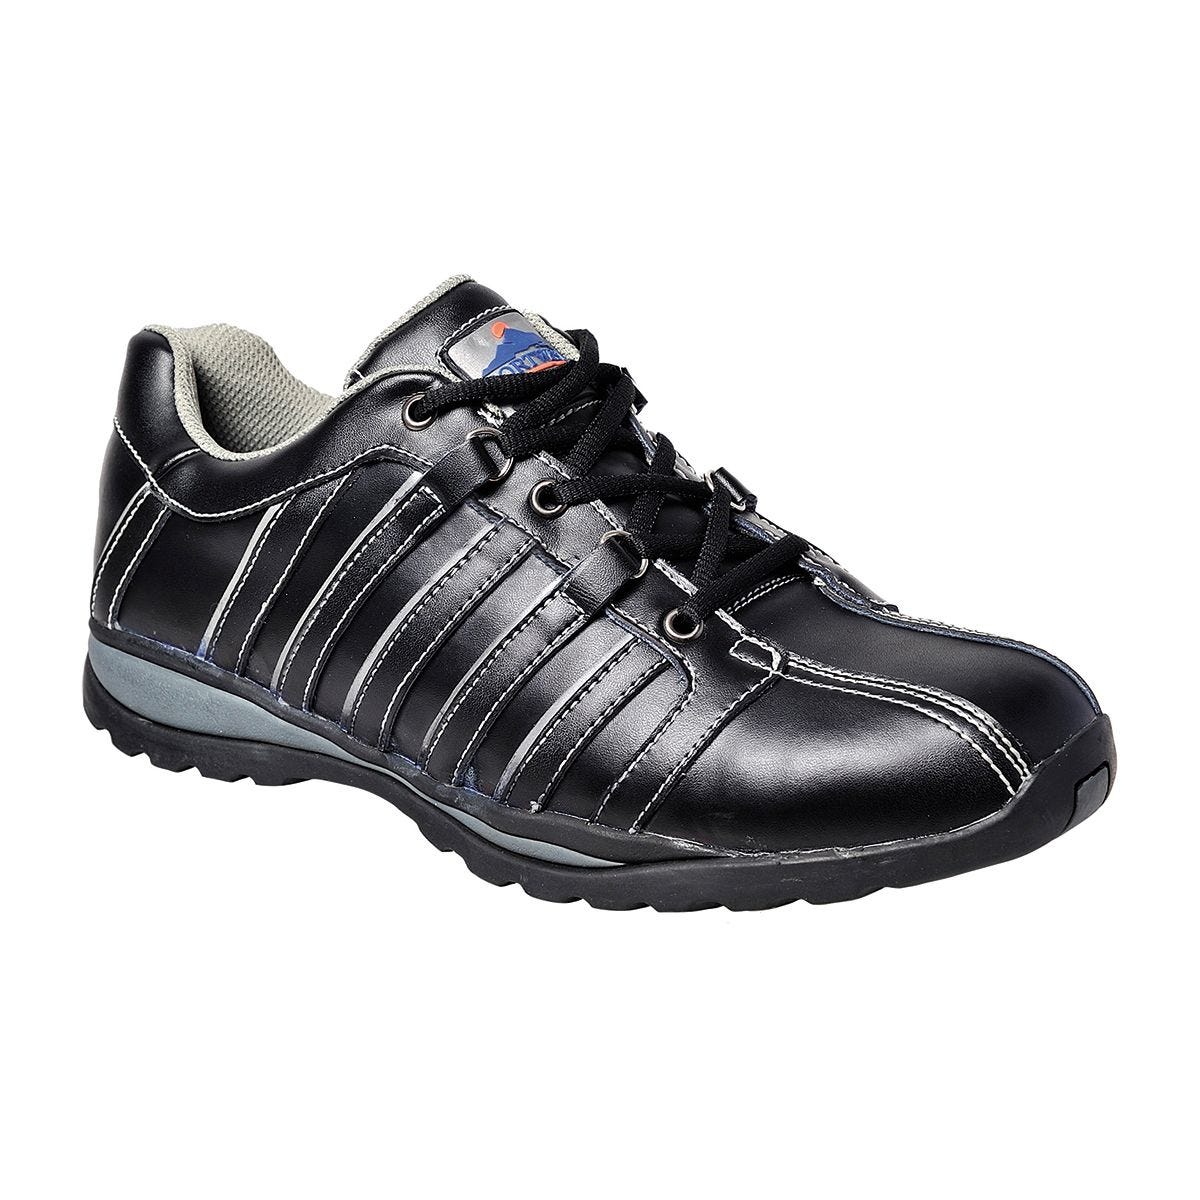 Chaussures de sécurité femme S1P HRO noir - Portwest - Taille 37